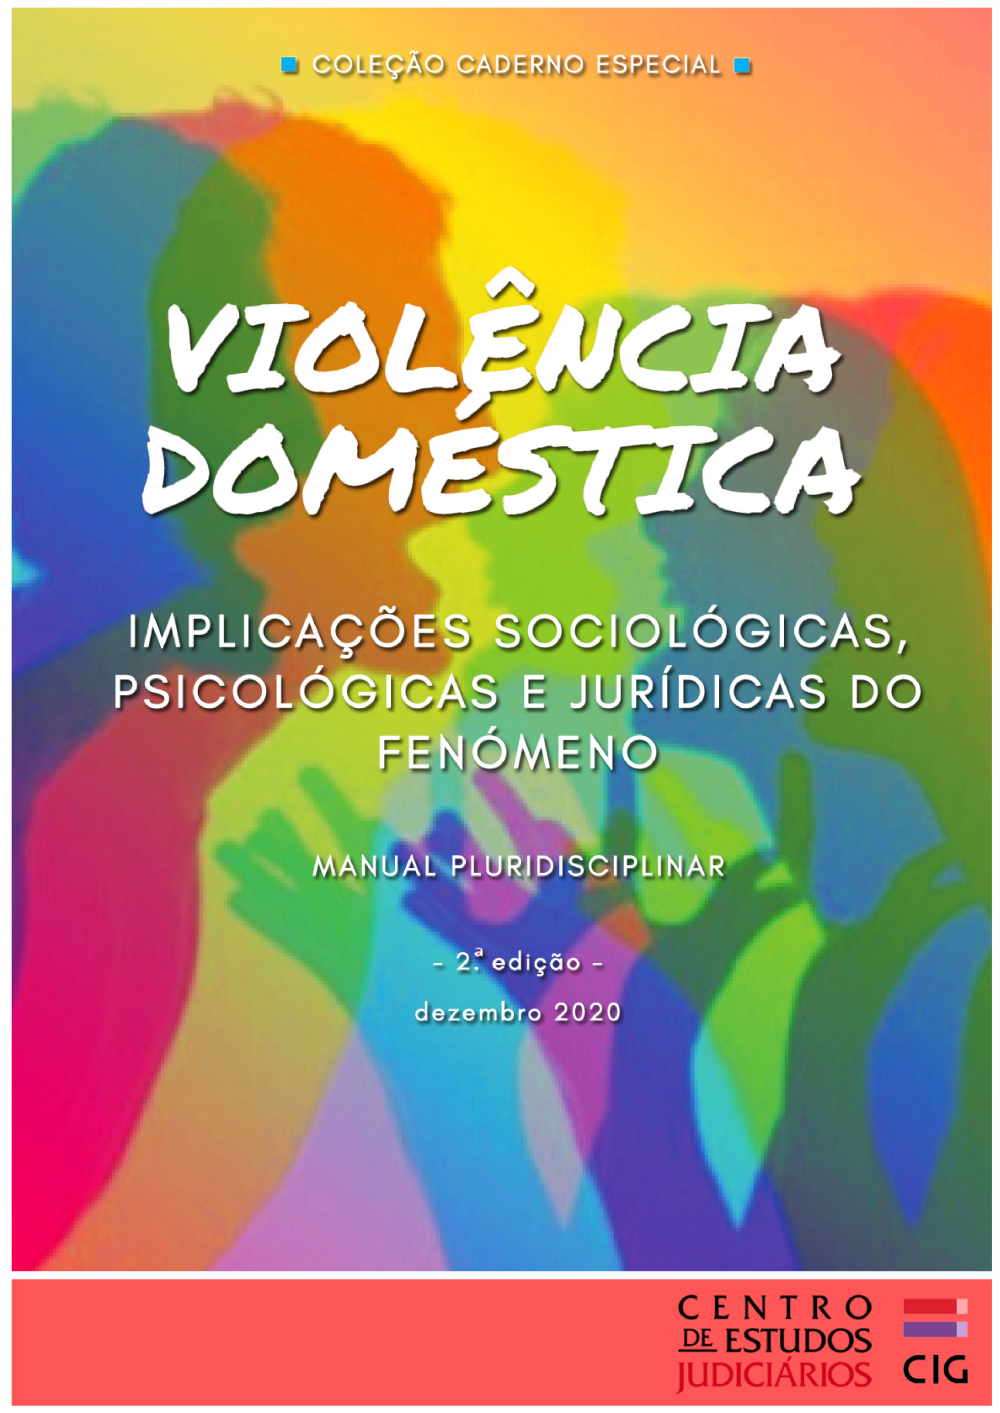 Violência Doméstica - implicações sociológicas, psicológicas e jurídicas do fenómeno – Manual pluridisciplinar (2.ª edição)